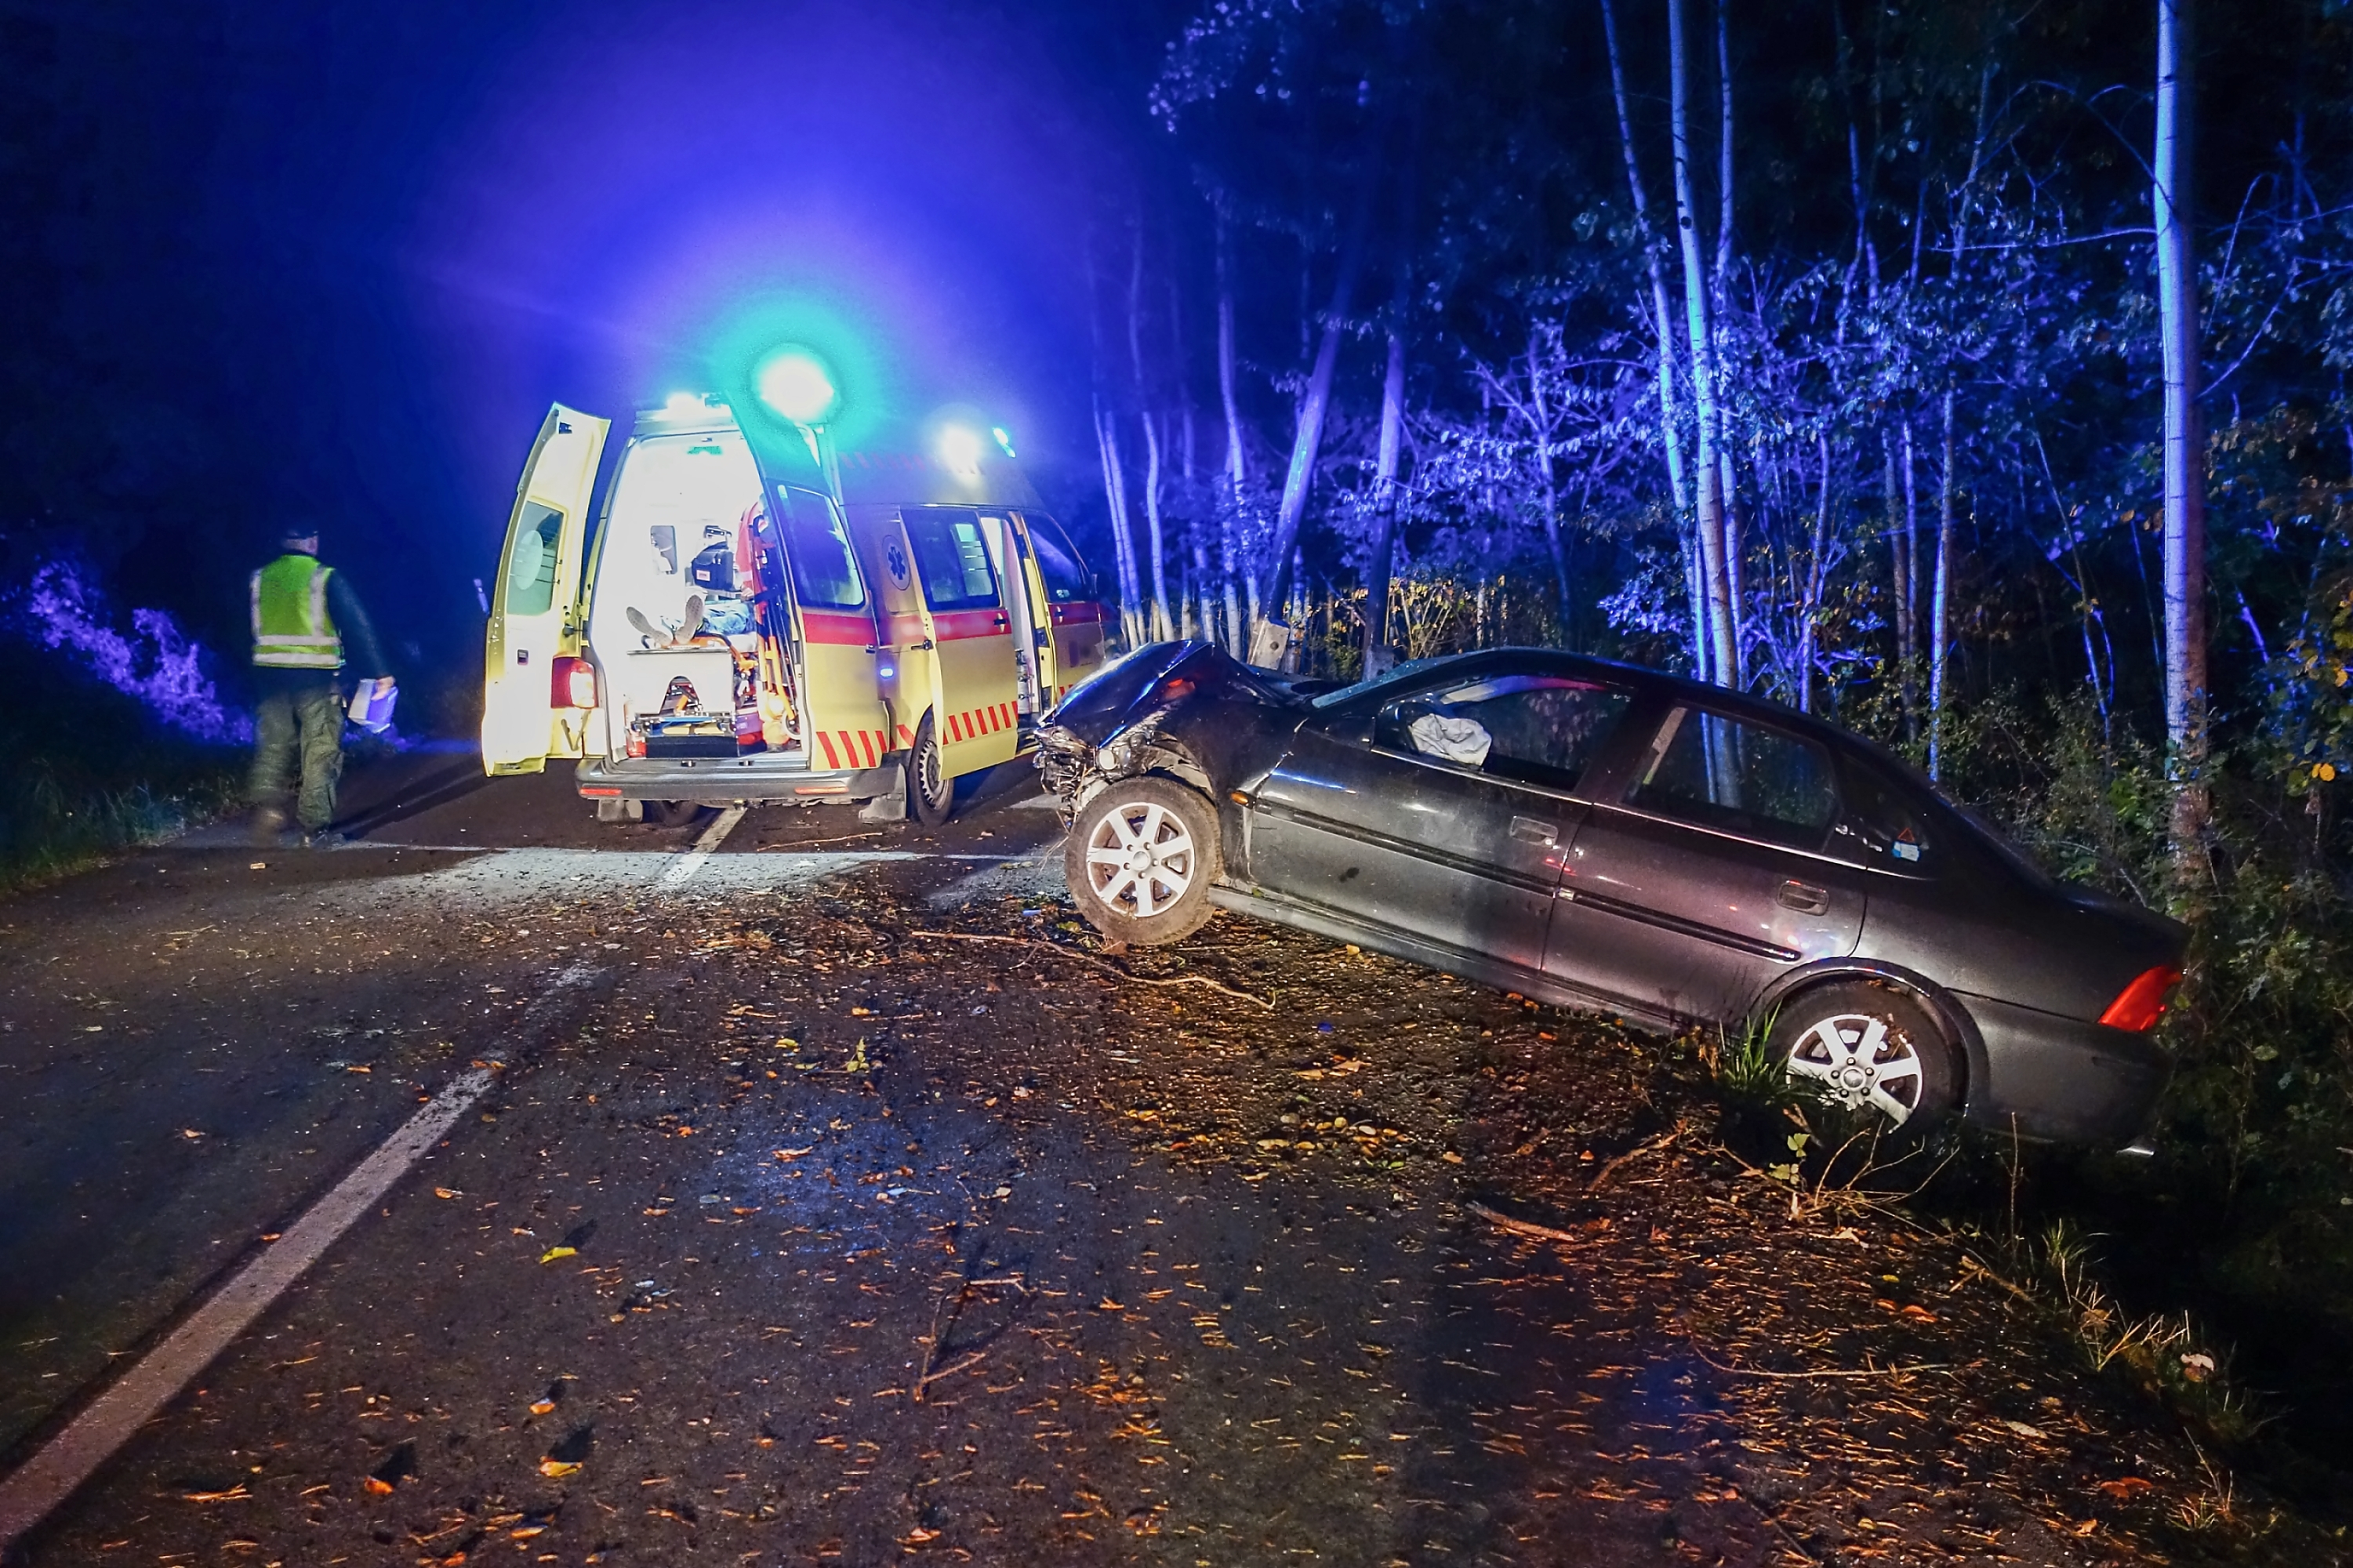 Eine Autounfall-Szene | Quelle: Shutterstock